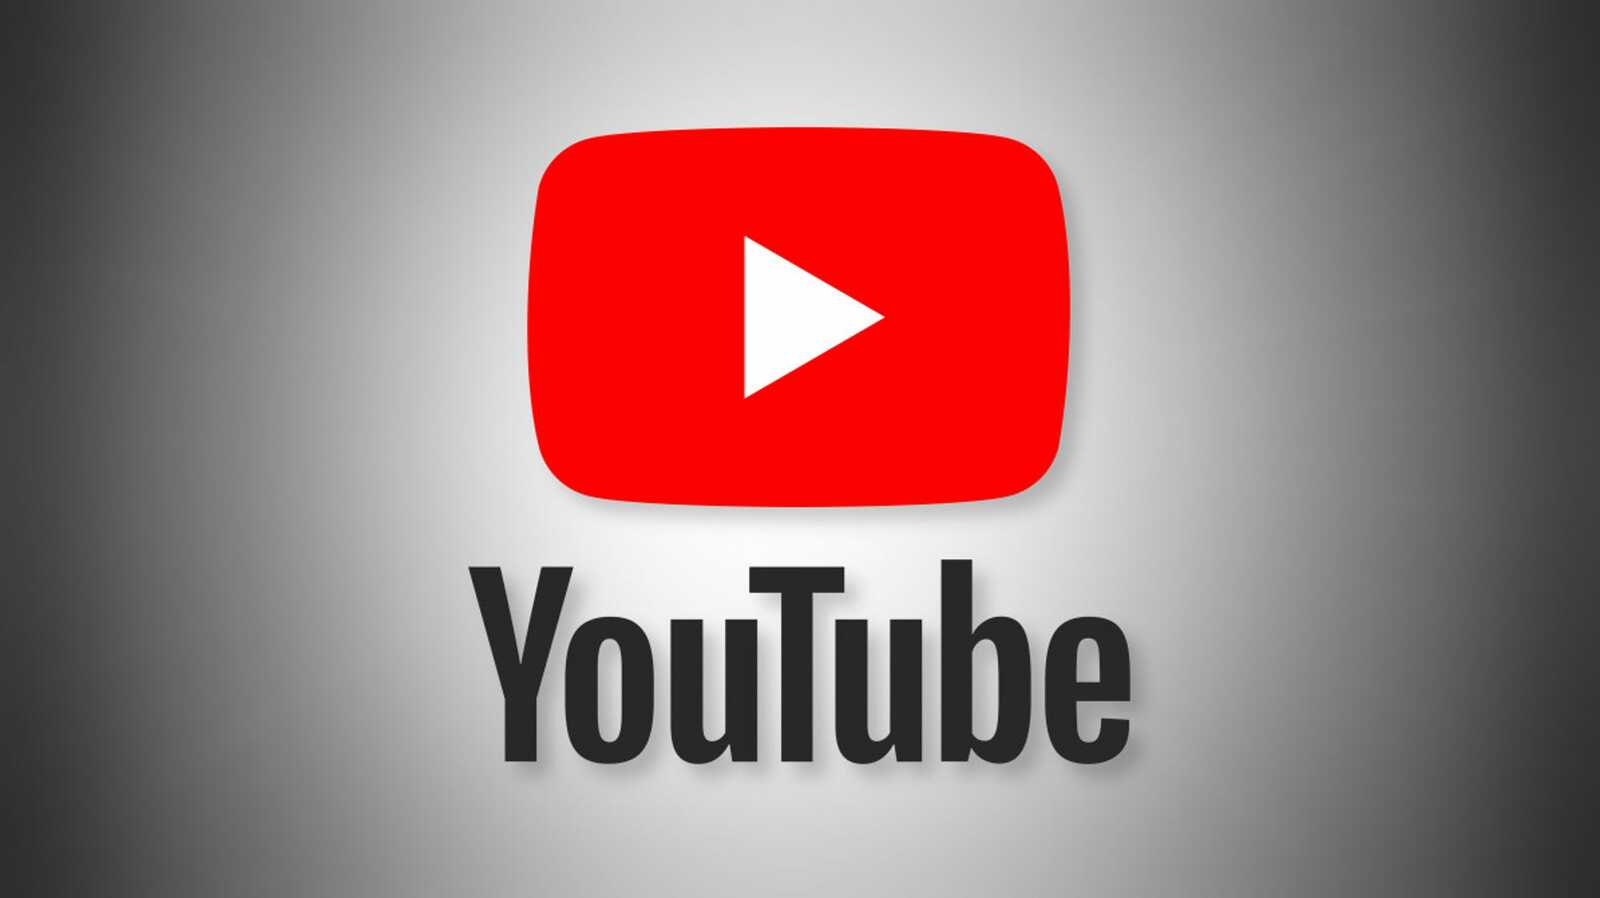 Медиаэксперт из Башкирии отметил, что видеохостинг YouTube постепенно выходит из доверия россиян.